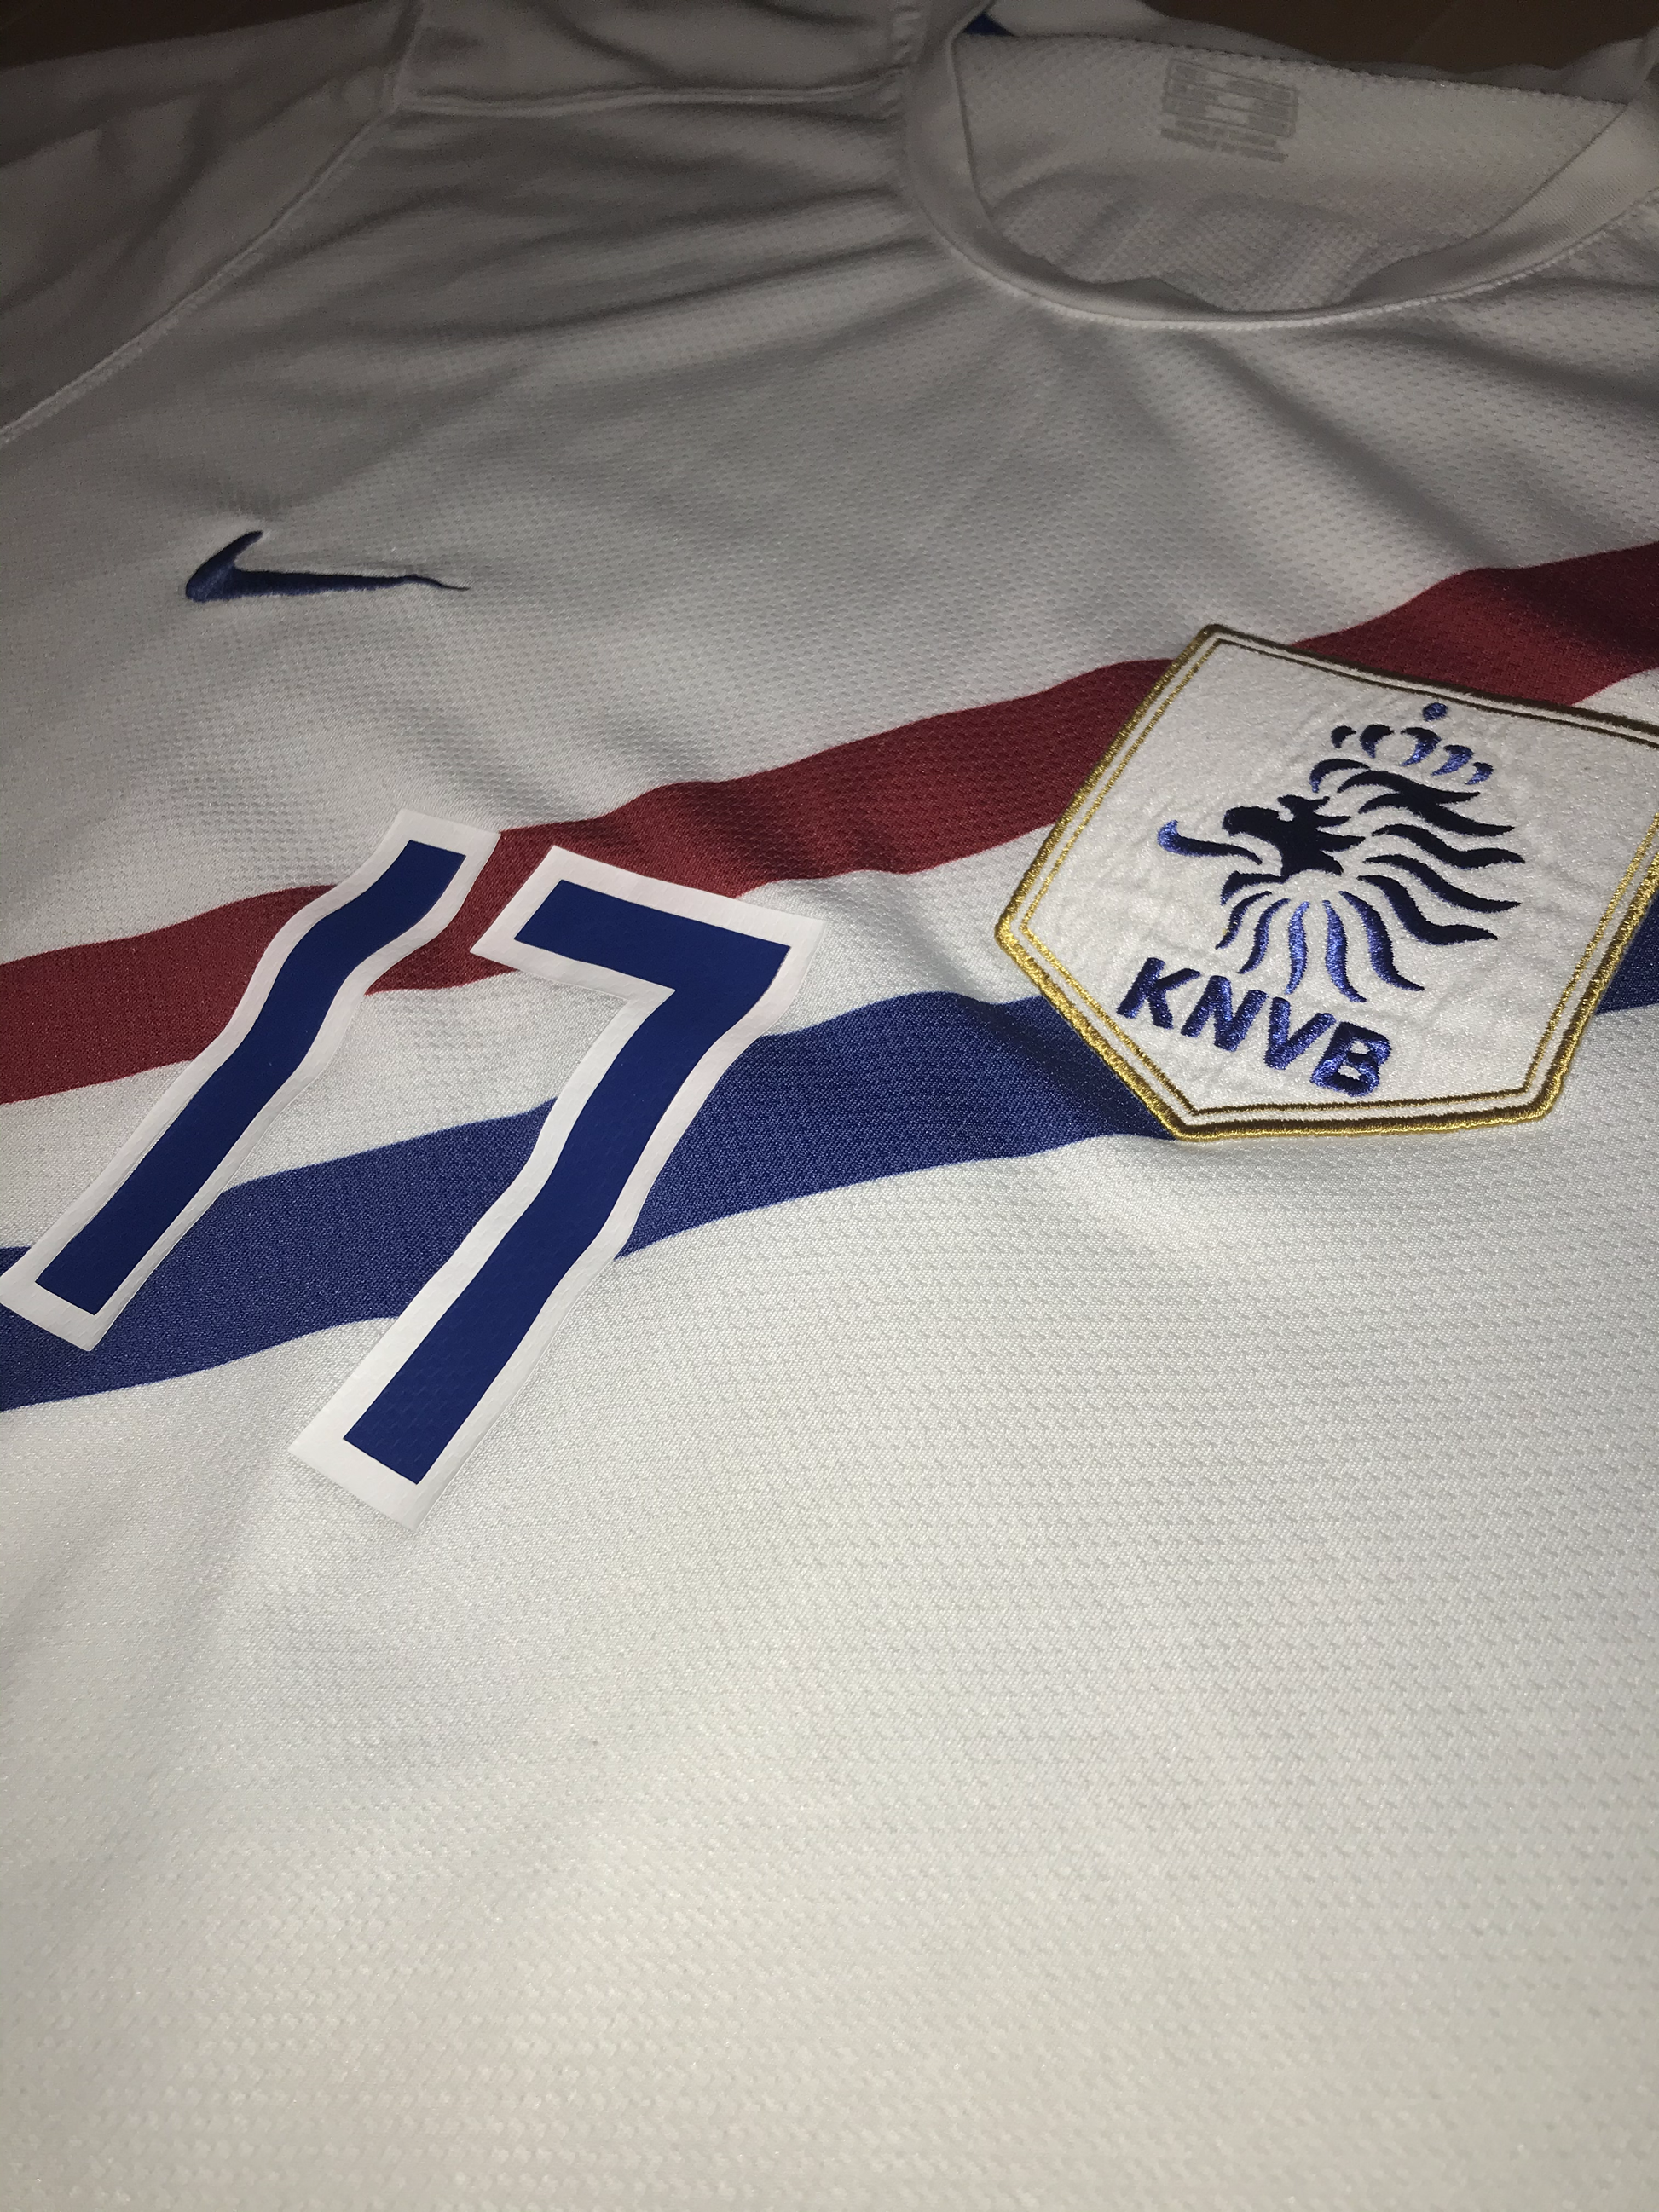 Netherlands 2012/13 Home Shirt (Great) – Away Goals Football Shop